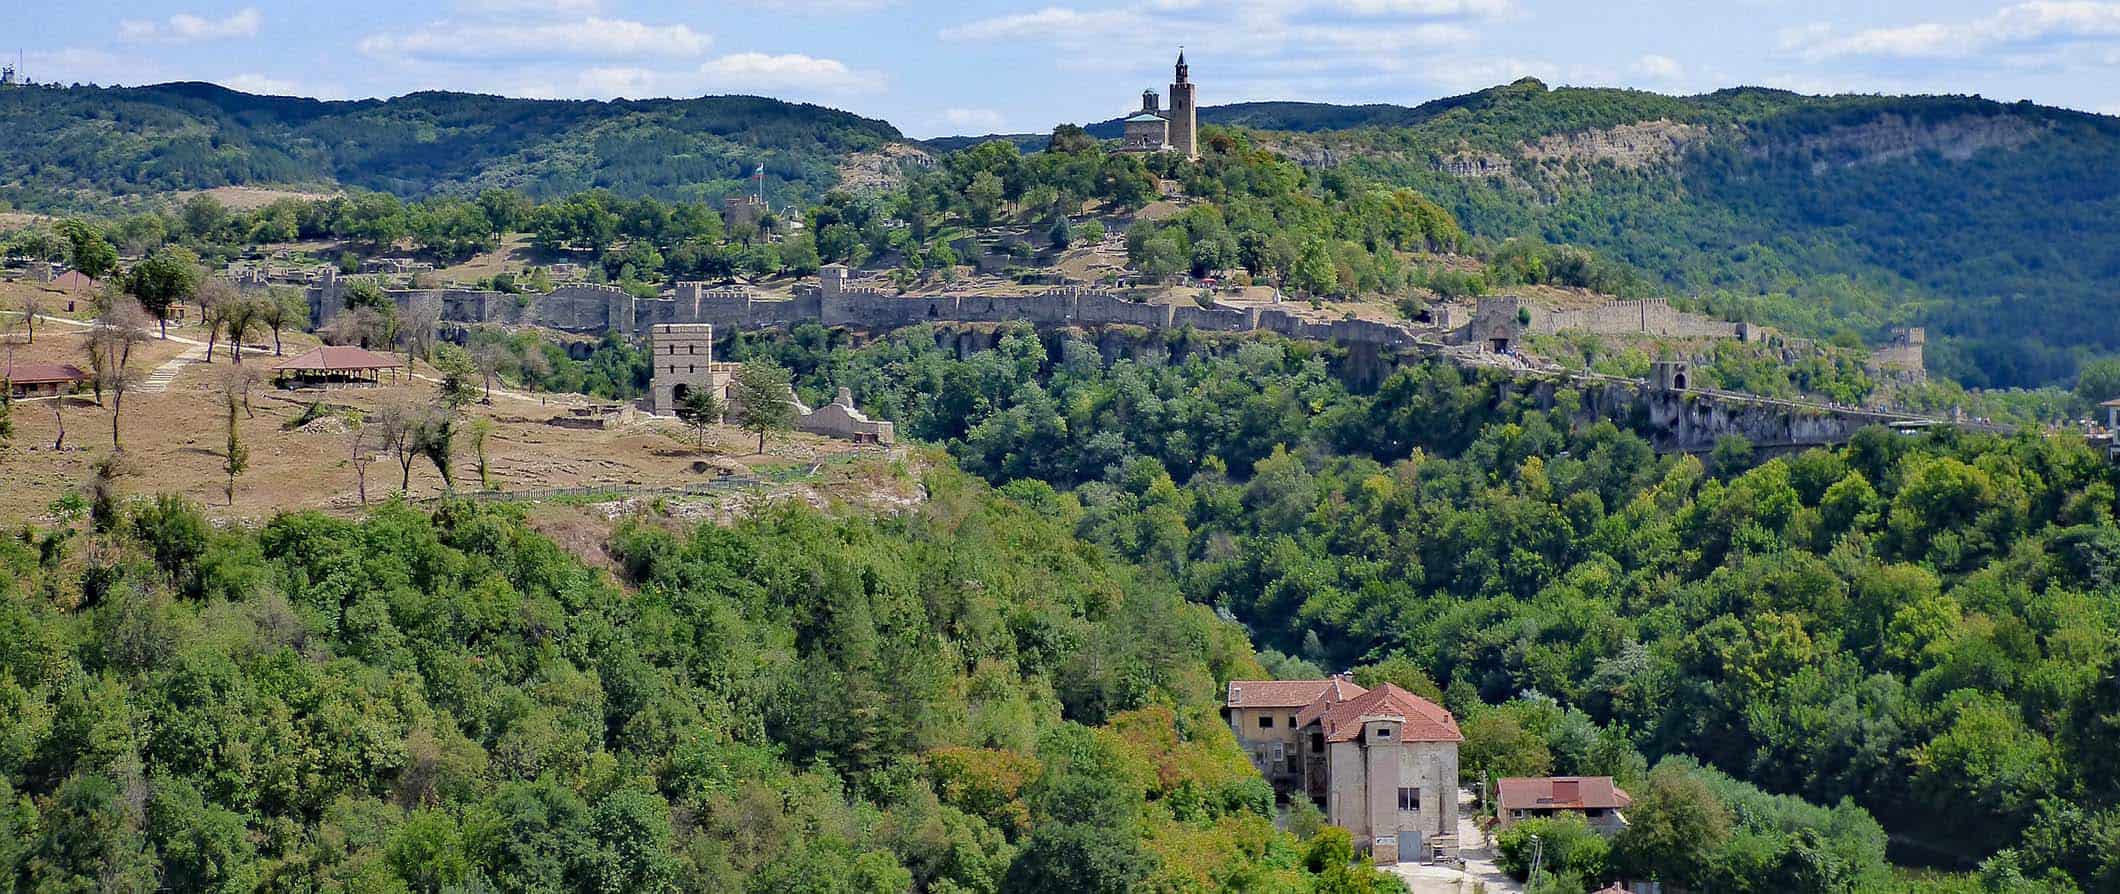 Fortaleza histórica com vista para Veliko Tarnovo, Bulgária, cercada por árvores e colinas